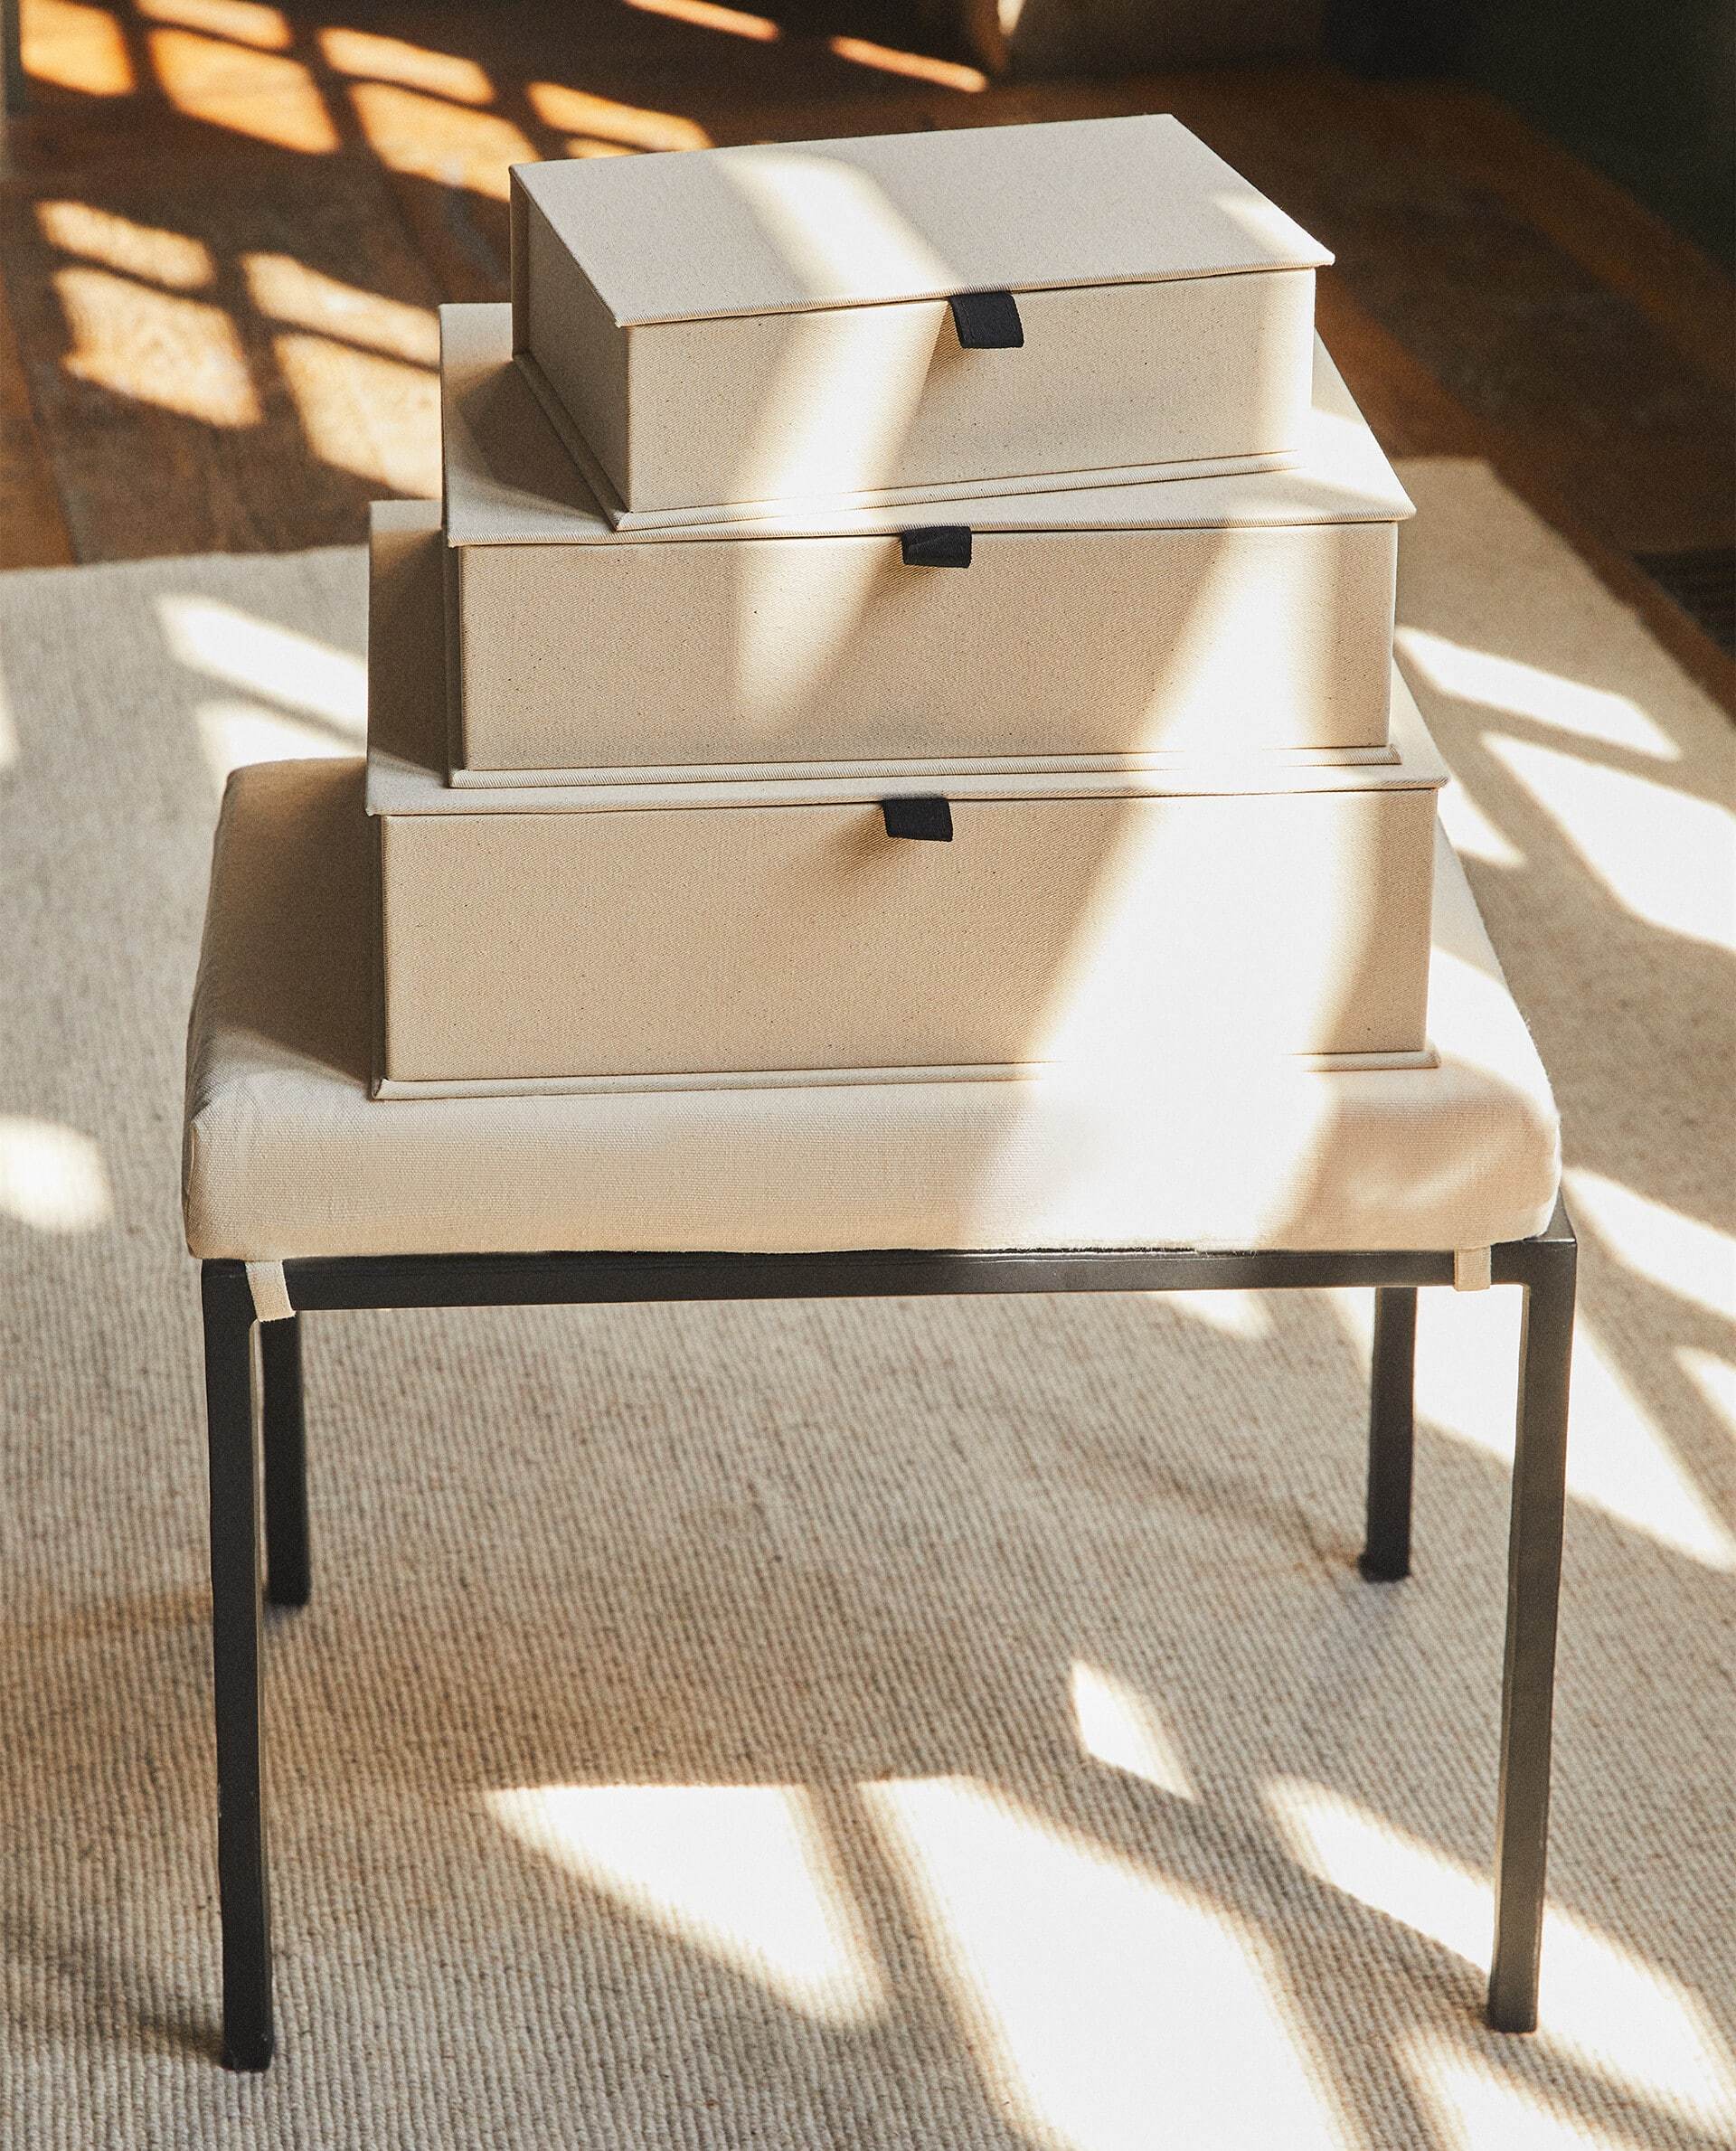 Caja organizadora semi rígida forrada en algodón, con tapa y tirador, Zara Home (desde 12,99 euros)